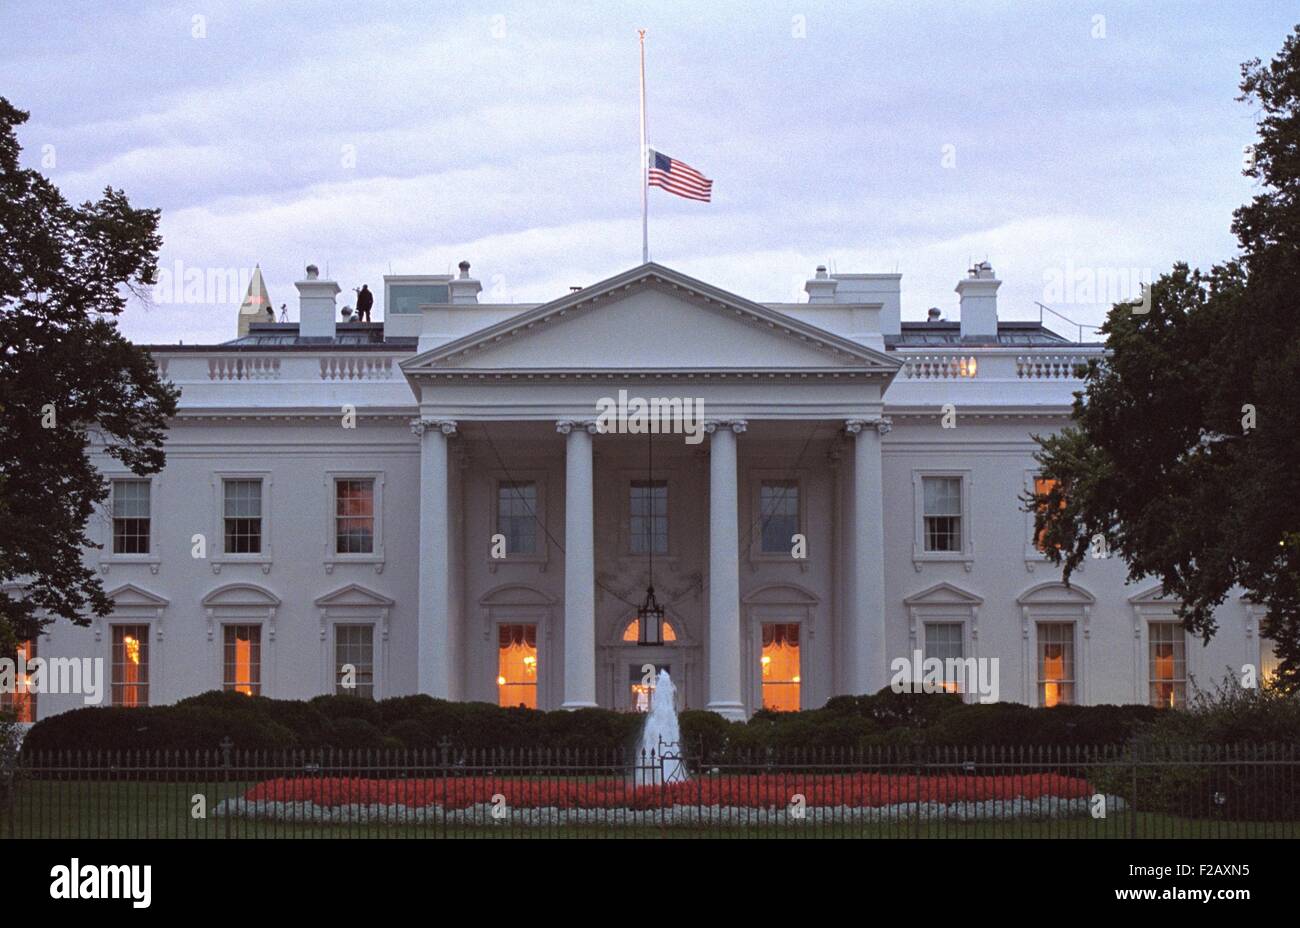 Bandiera americana vola a metà del personale della Casa Bianca al sunrise Venerdì, Settembre 14, 2001. 3 giorni seguenti l'9-11 attacchi terroristici, contatore assalto i membri del team sono pubblicati sul tetto. (BSLOC 2015 2 148) Foto Stock